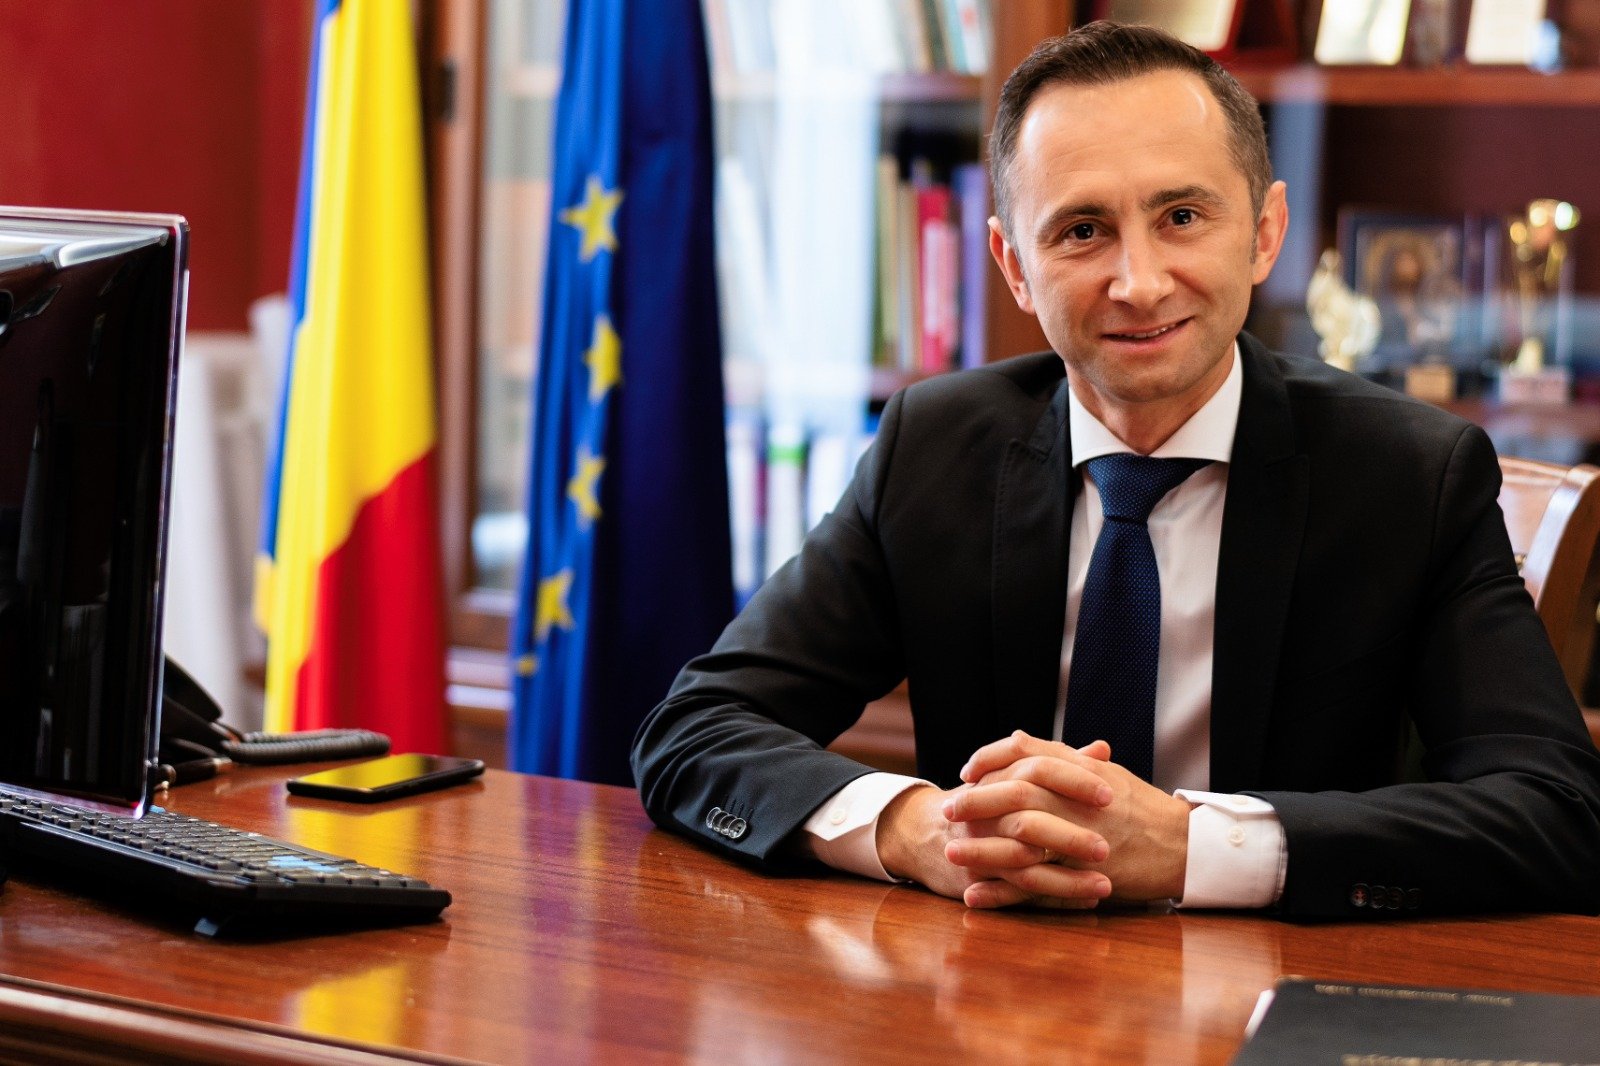  Președintele CJ Timiș, acuzat de favorizare de persoane și fals în declarații. ANI a sesizat Parchetul